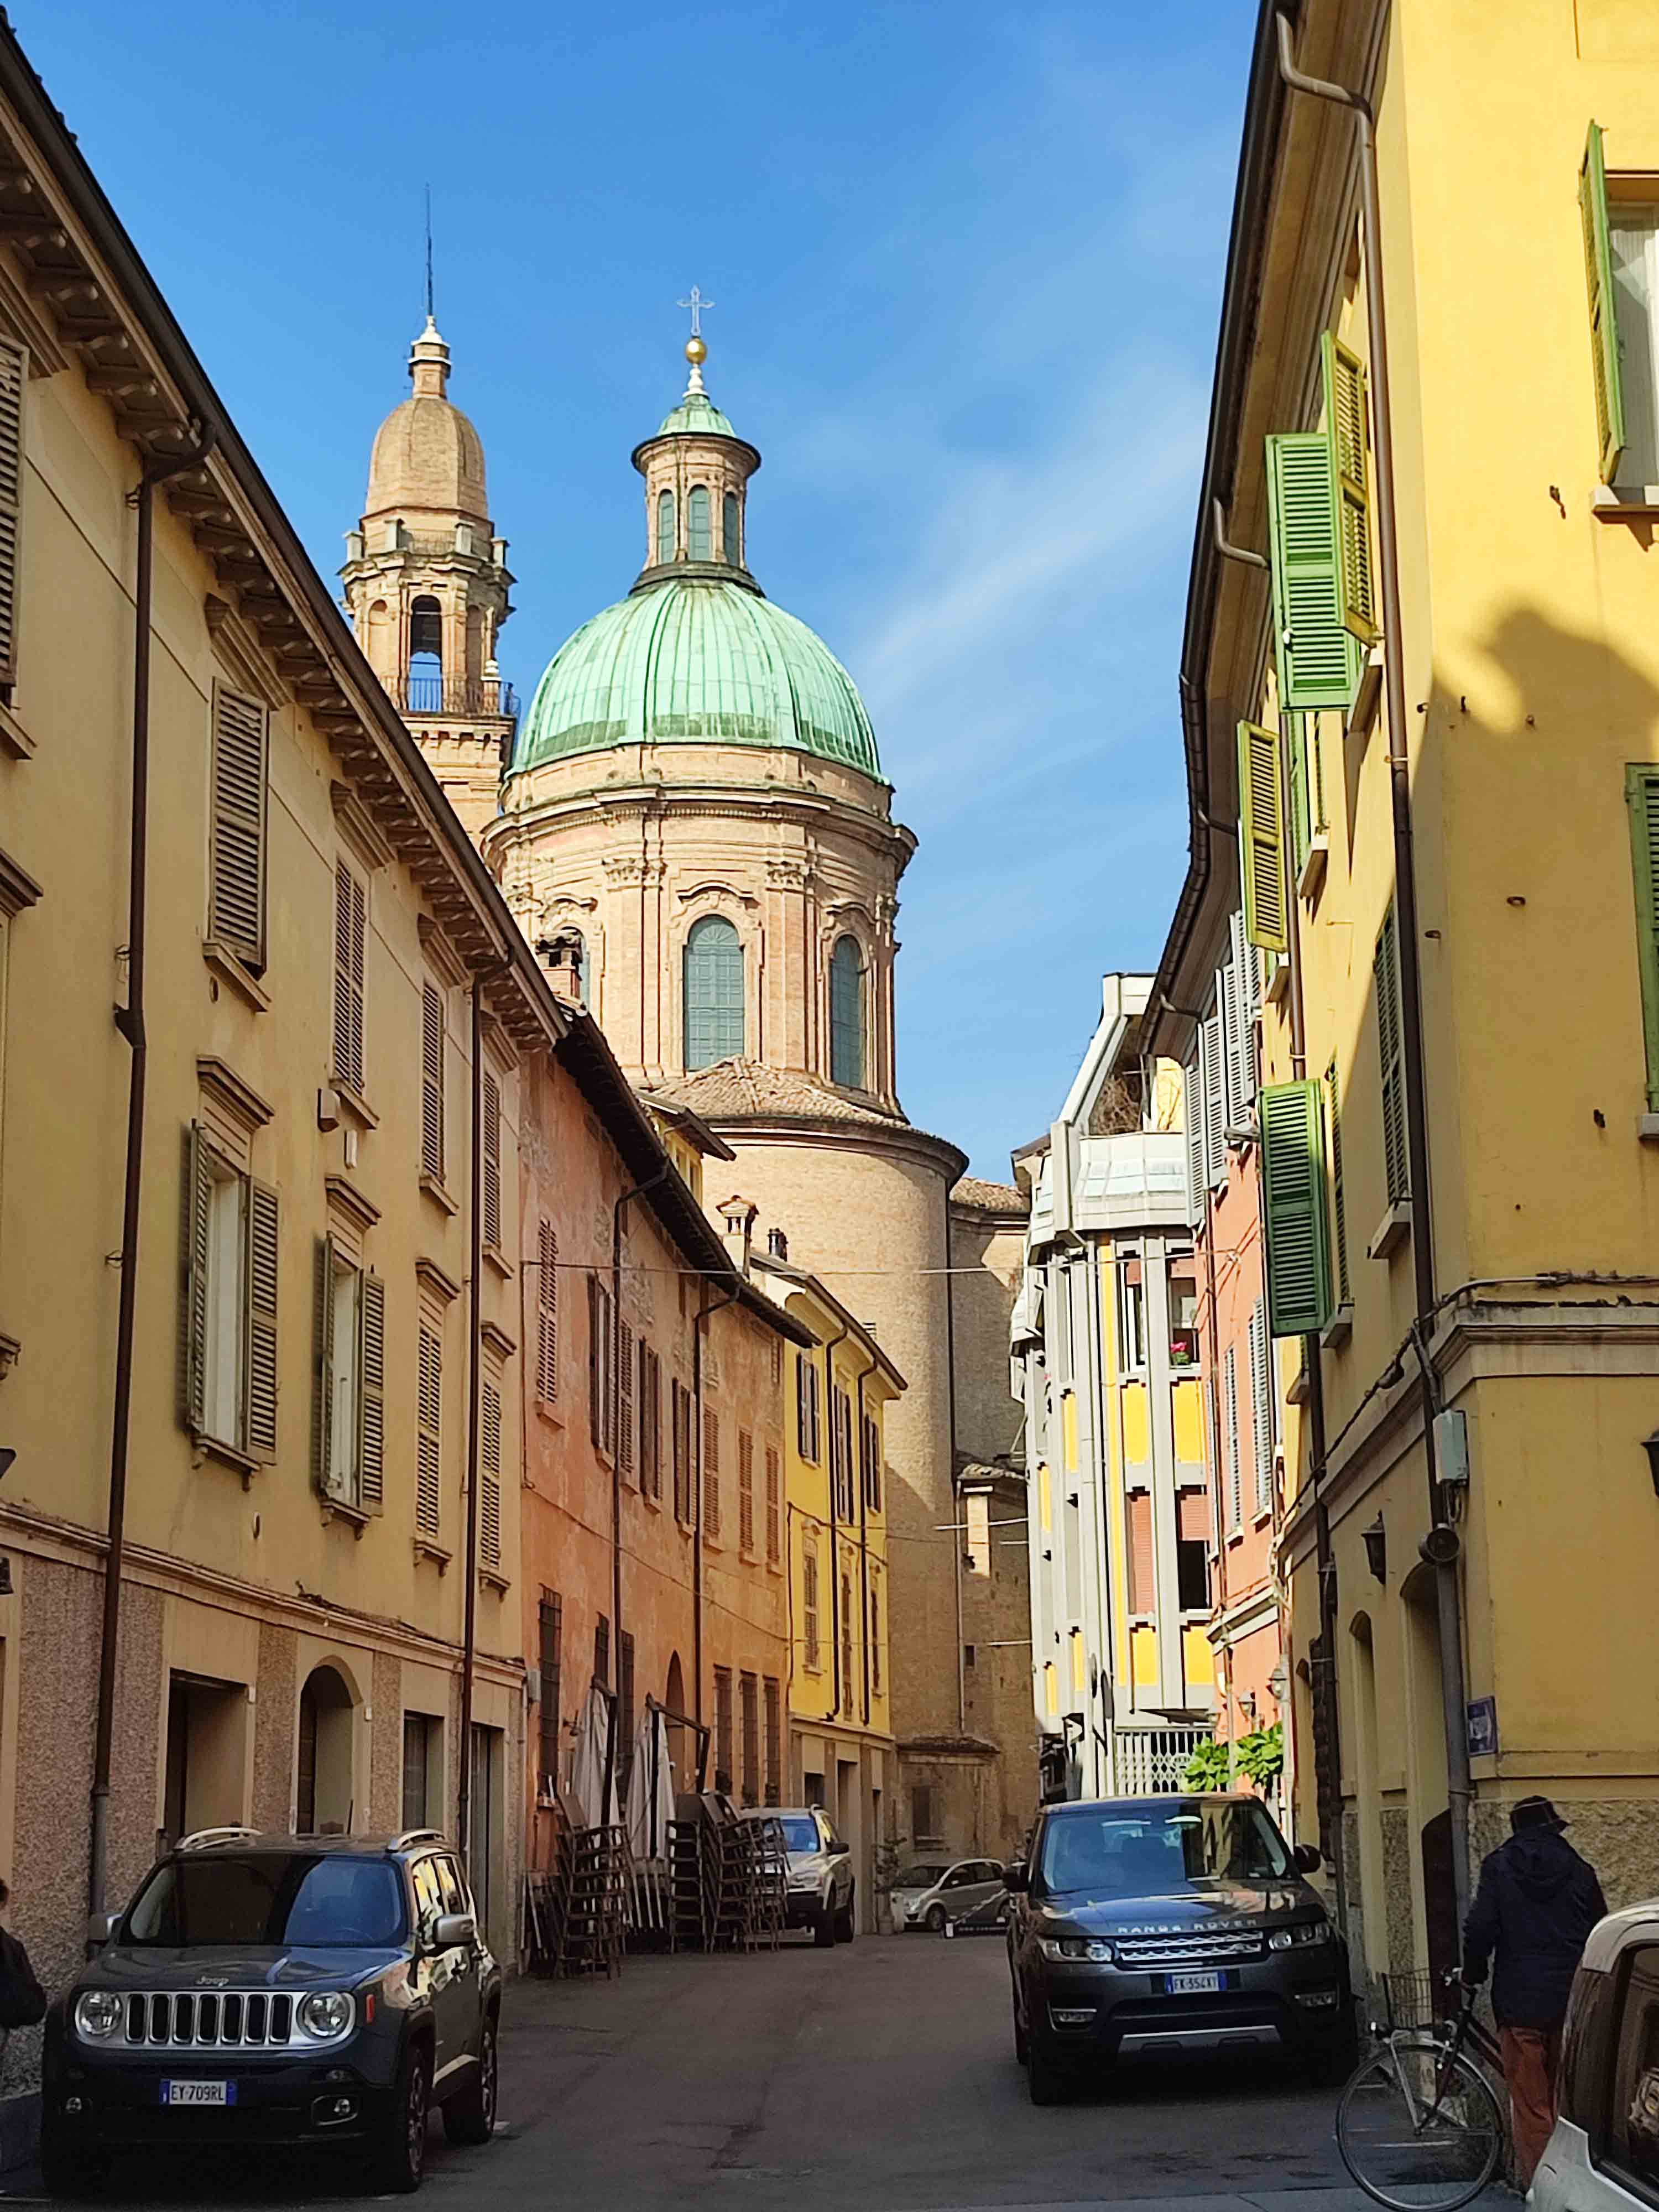 Historic buildings in Reggio Emilia, Italy.